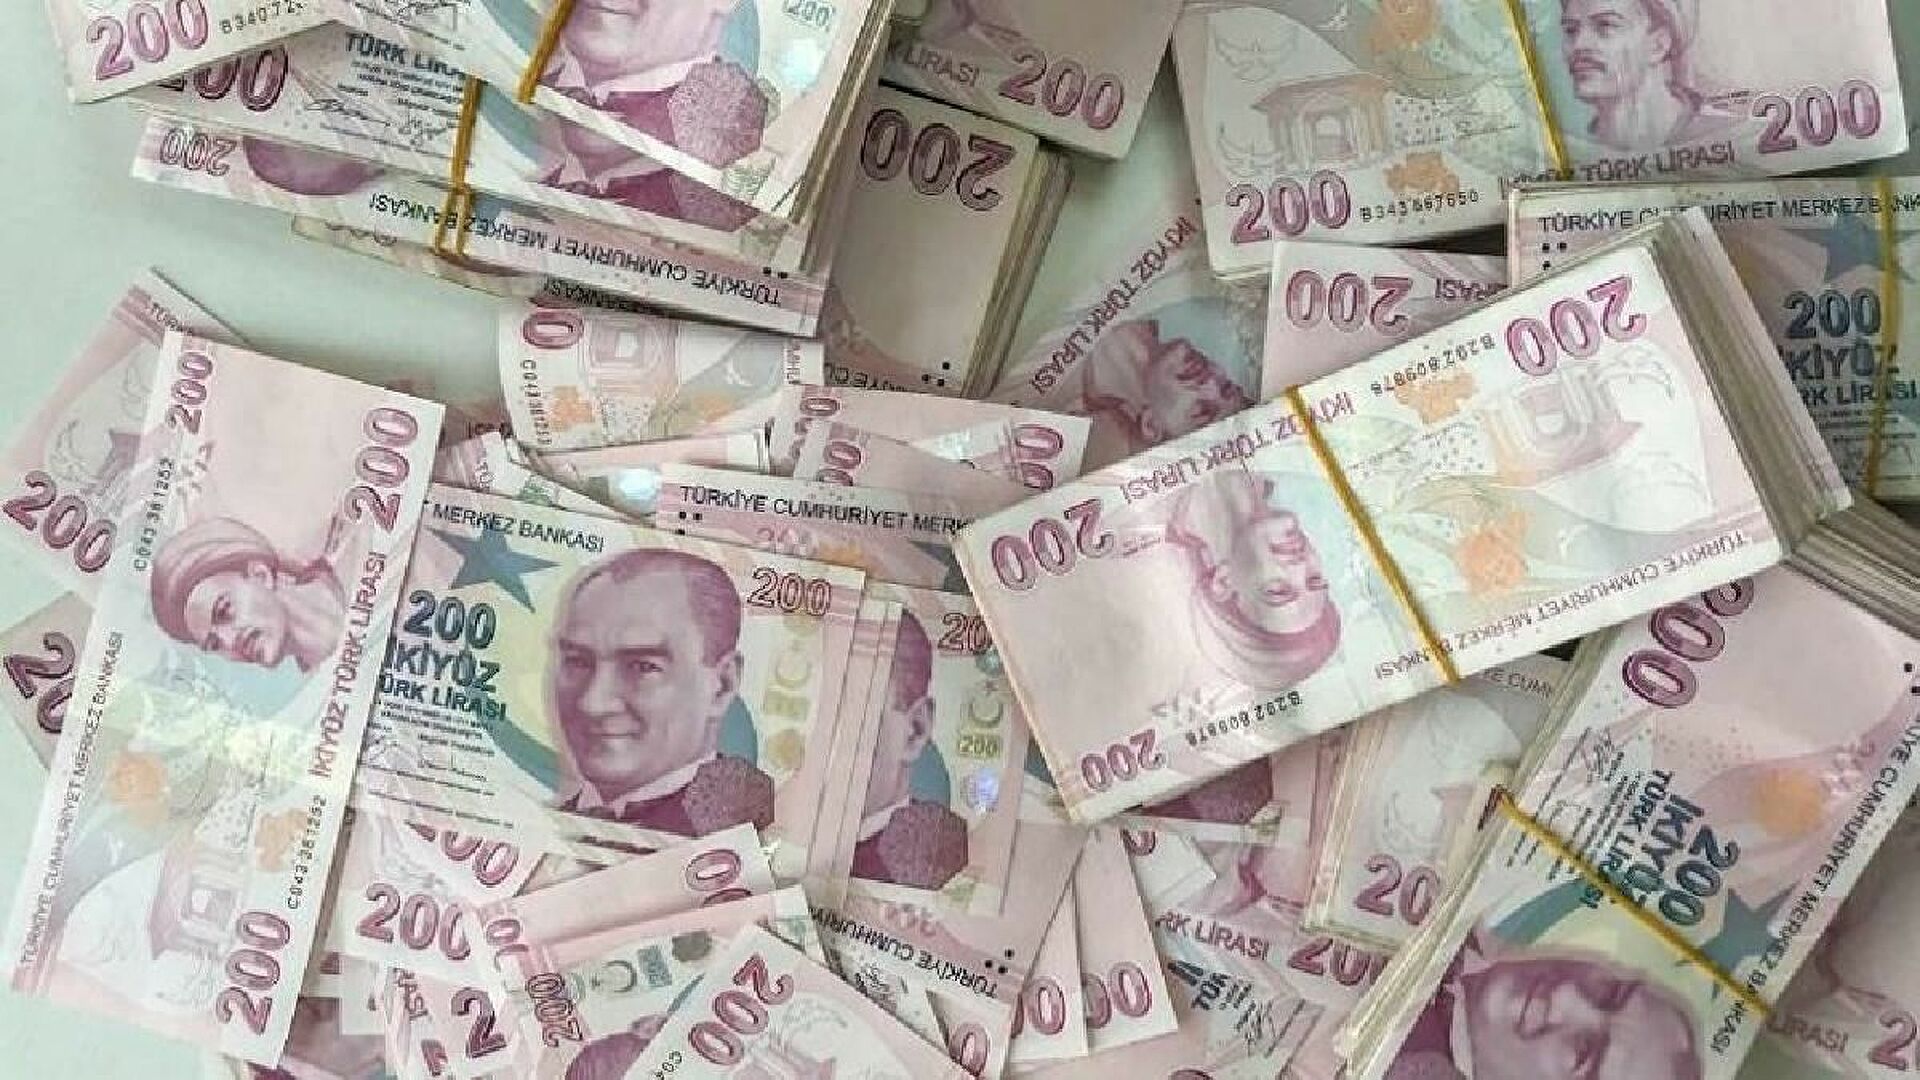 4 Bankadan Ortak Açıklama TC Kimliğiyle Gelen Vatandaşa Zorluk Çıkarılmadan 44.000 TL Ödenecek